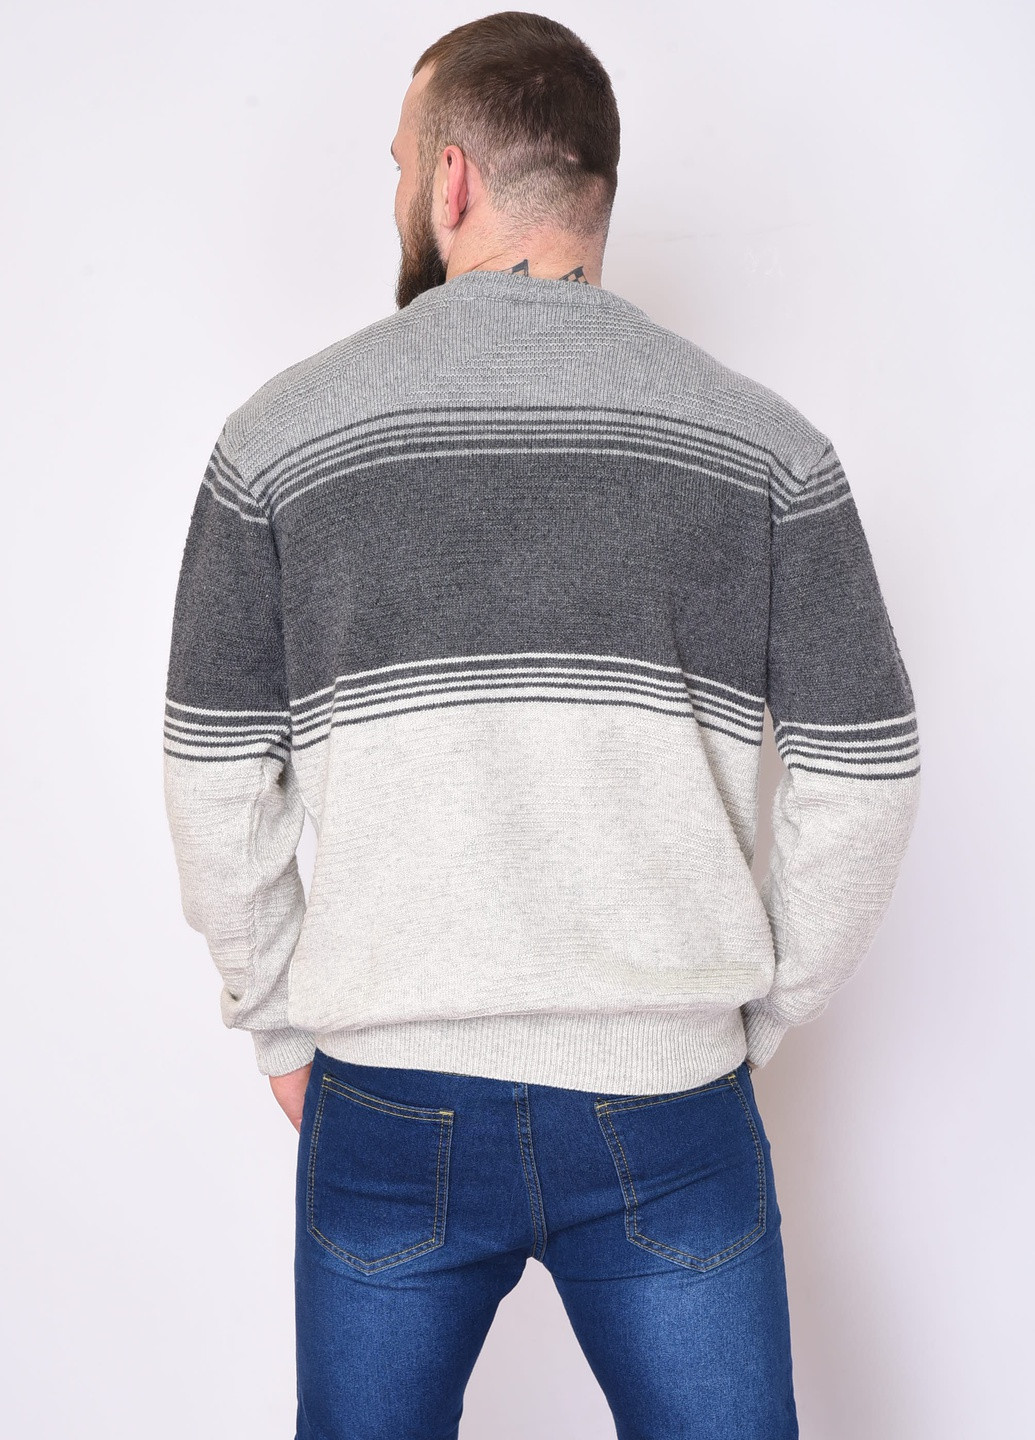 Серый зимний свитер мужской зимний серого цвета Let's Shop